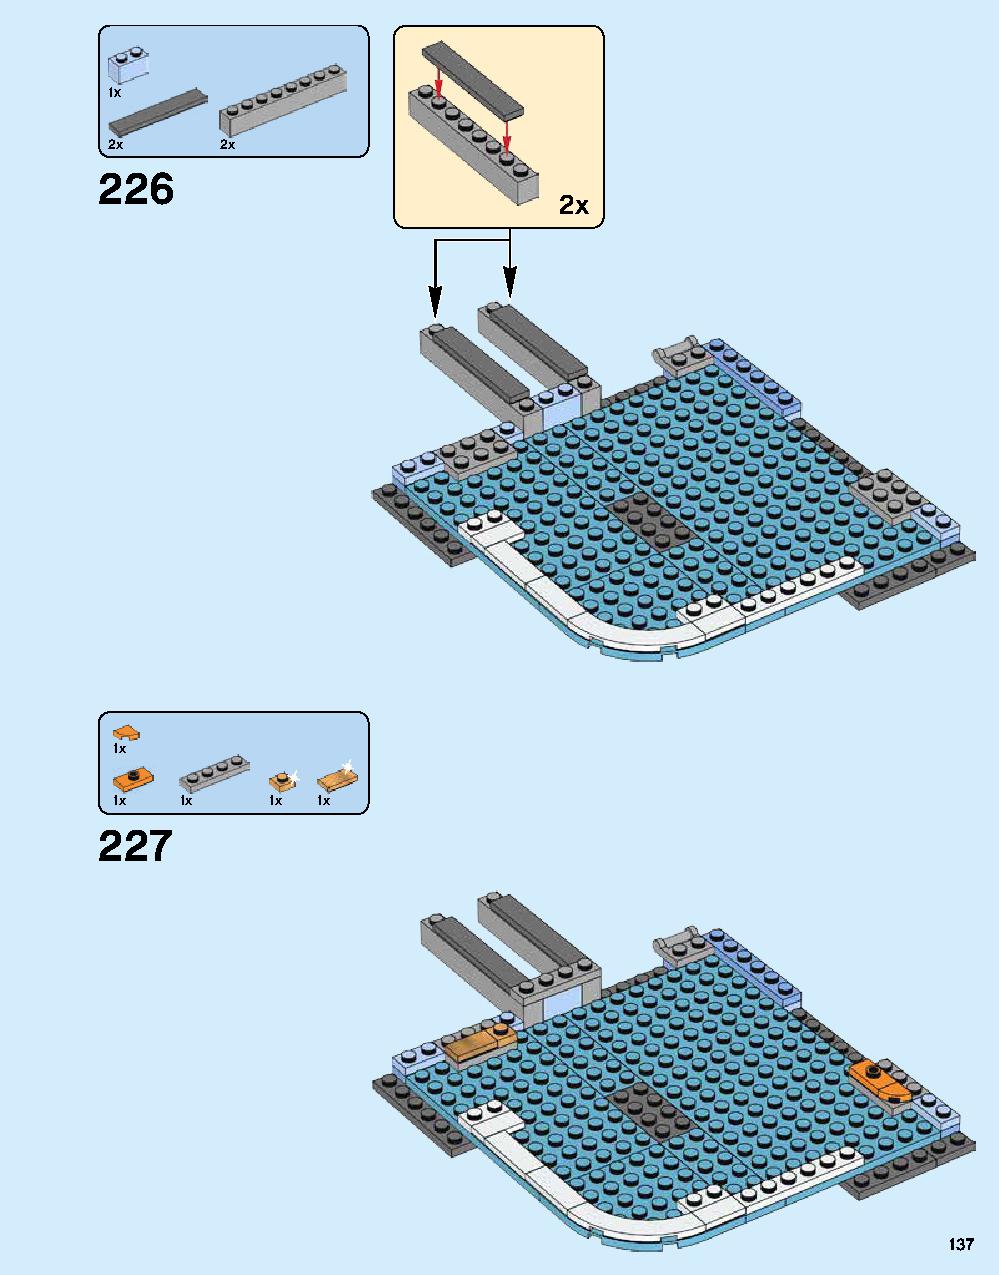 ニンジャゴー シティ 70620 レゴの商品情報 レゴの説明書・組立方法 137 page